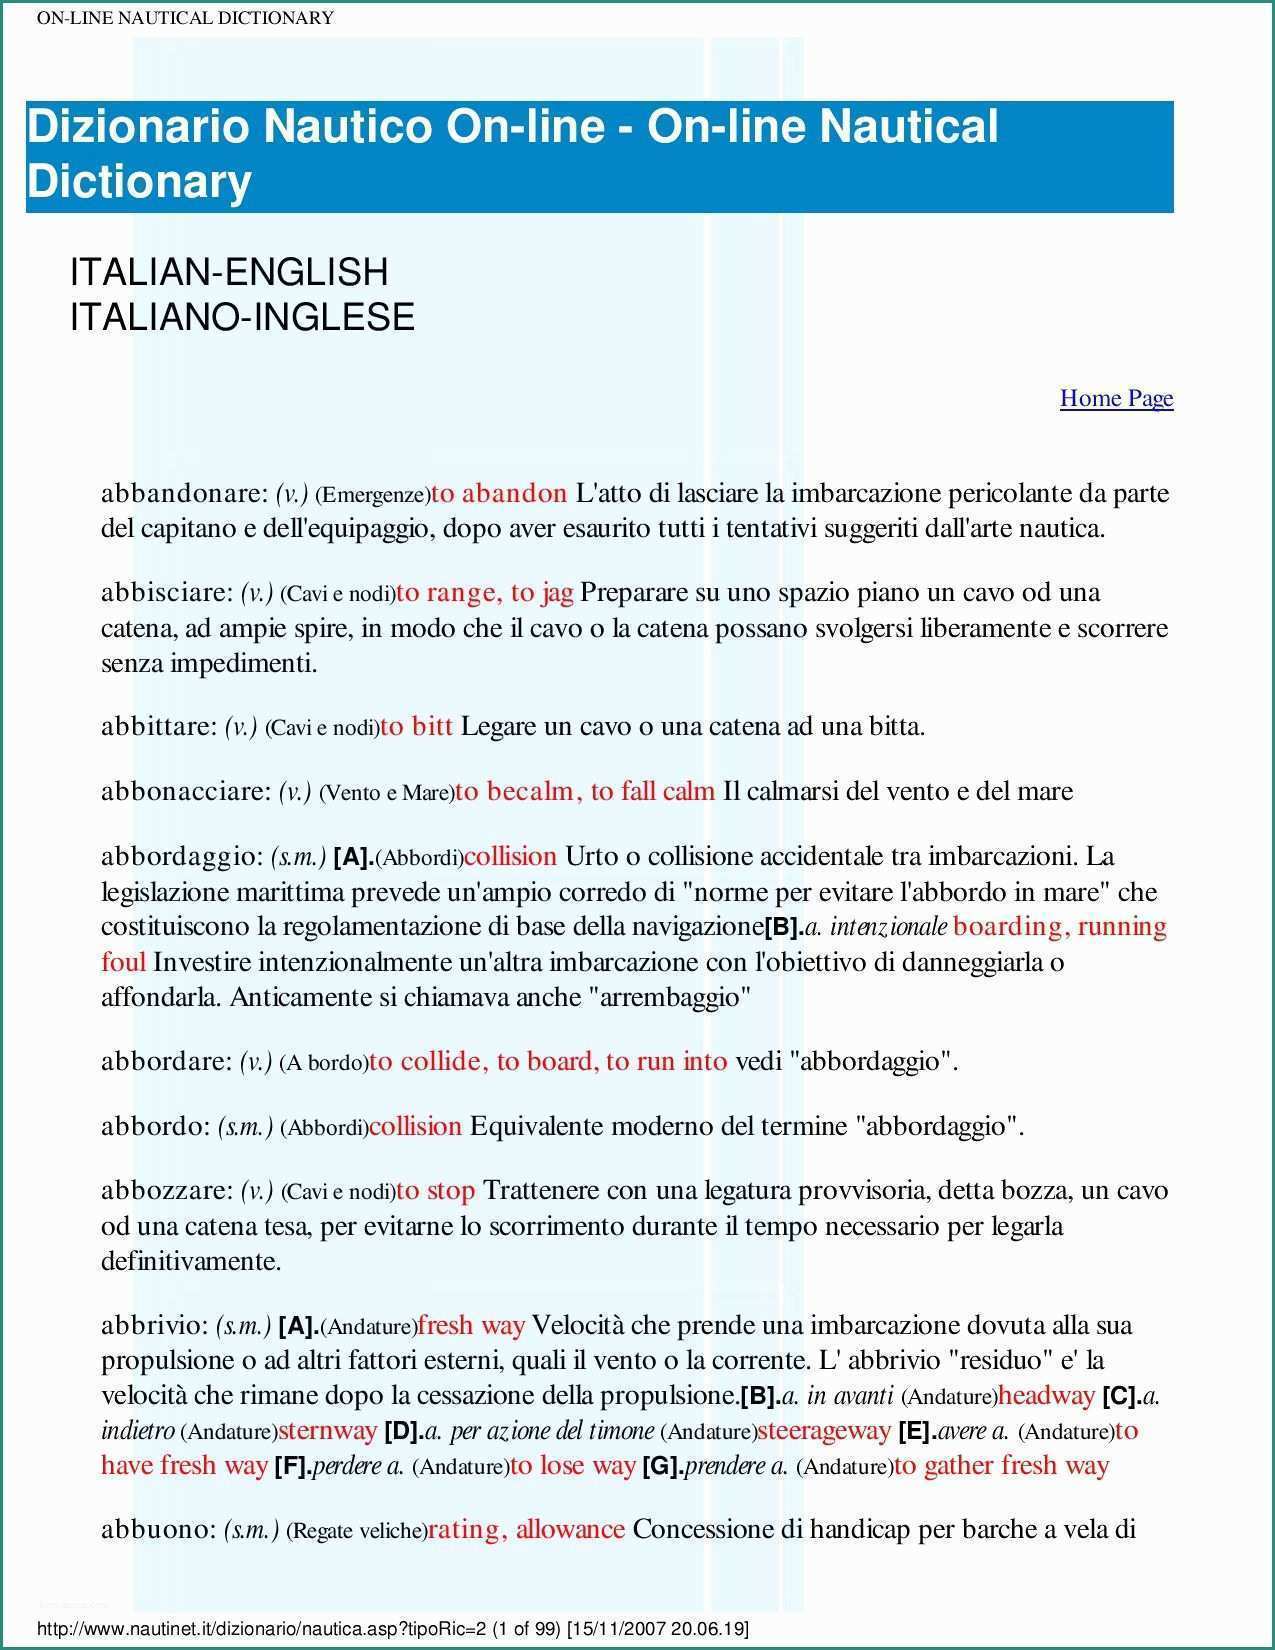 Pareti Divisorie In Plexiglass Per Interni E Dizionario Vocabolario Nautico by Pungib issuu